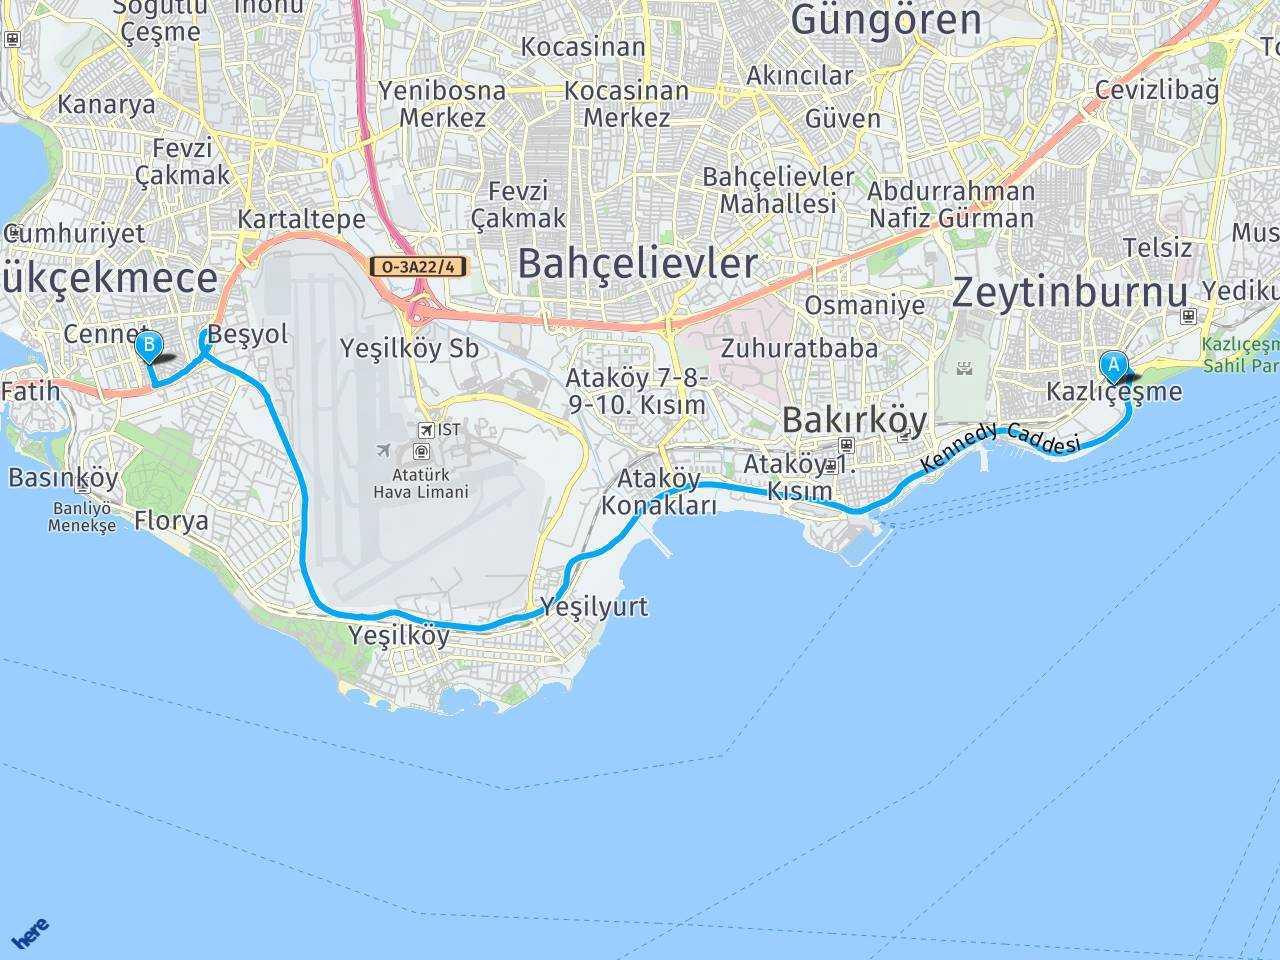 Kazlicesme Marmaray İstanbul Küçükçekmece Marmaray haritası